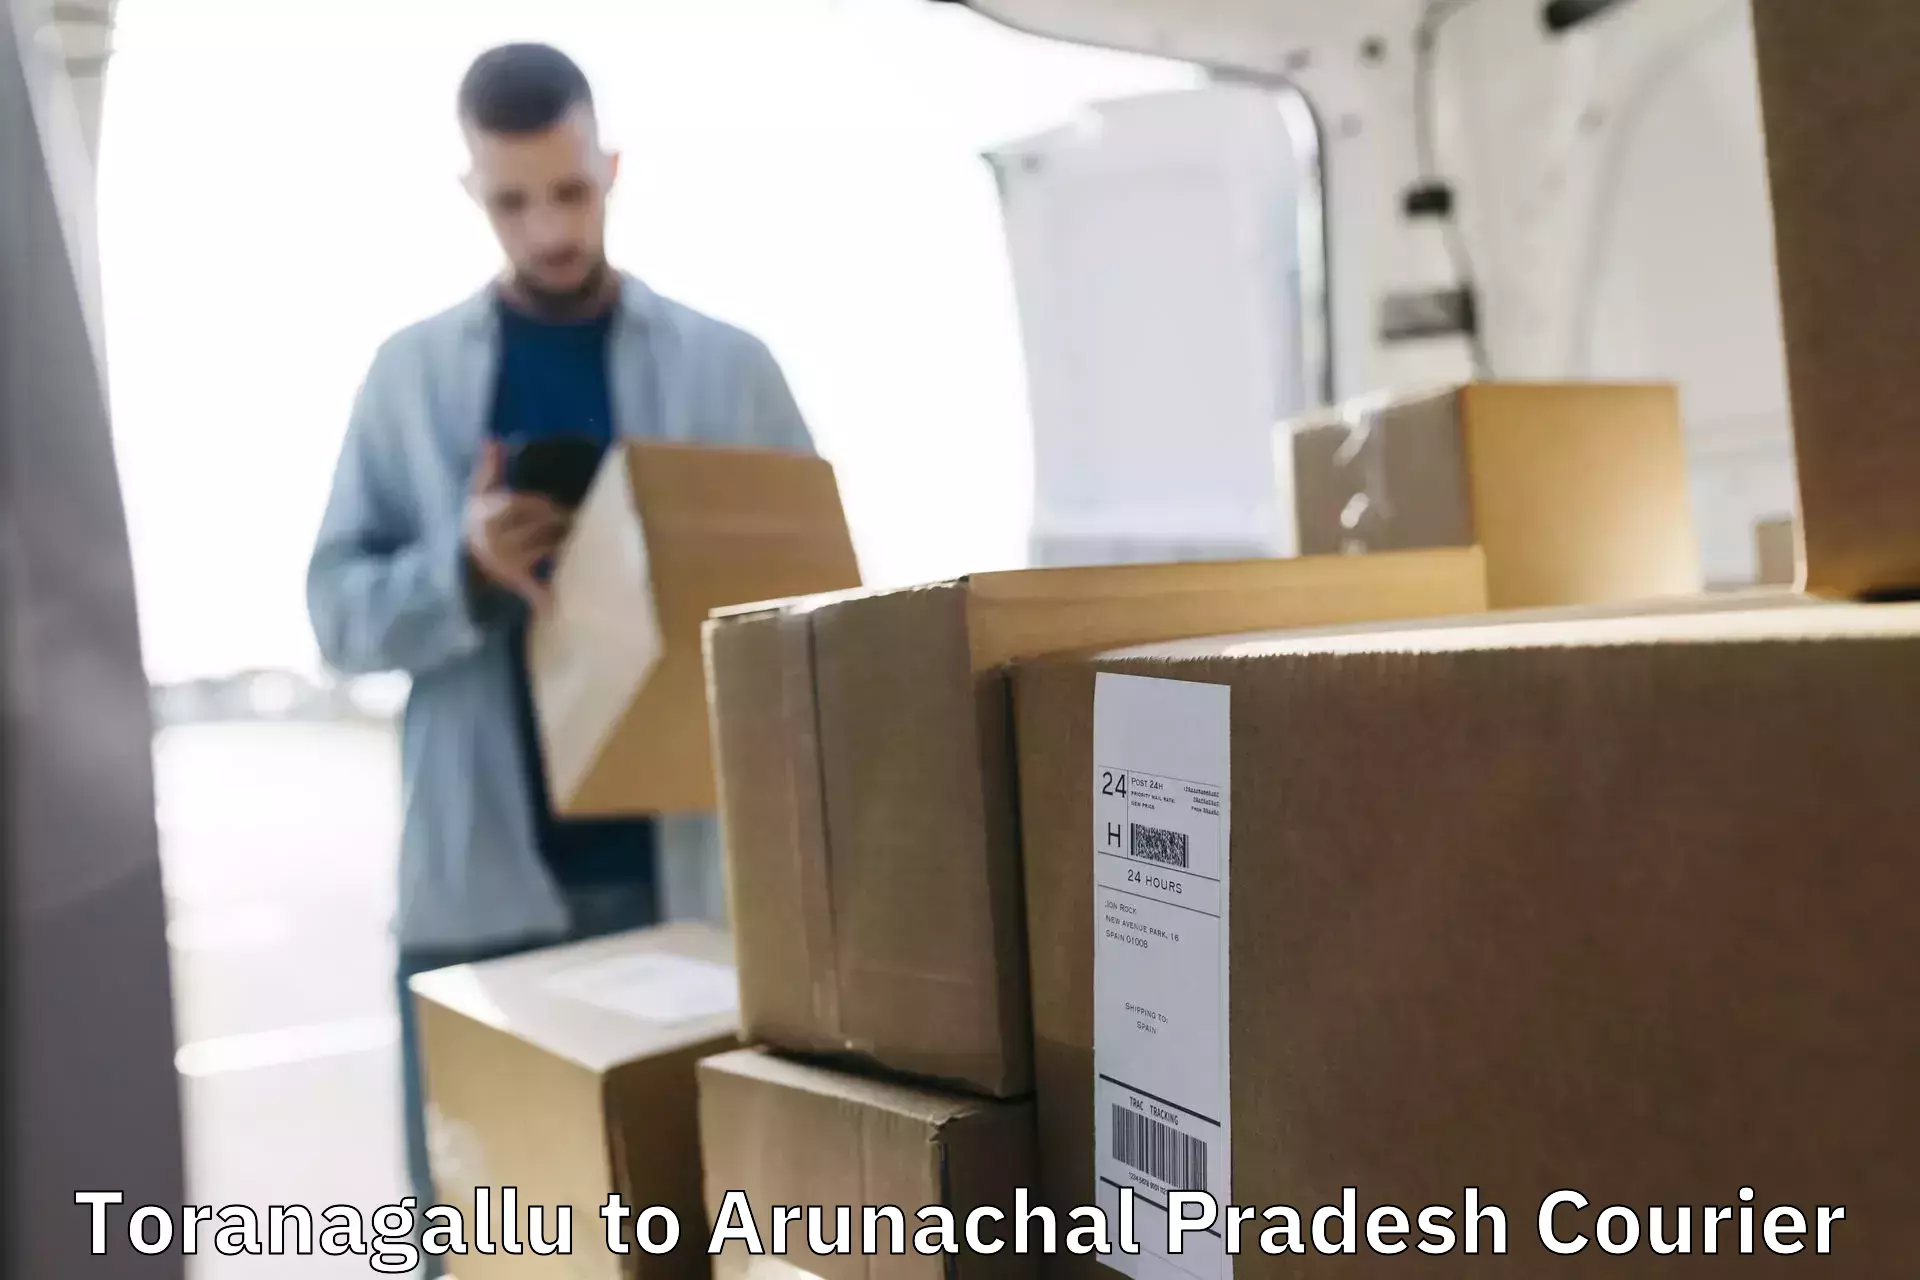 Cost-effective courier options Toranagallu to Arunachal Pradesh